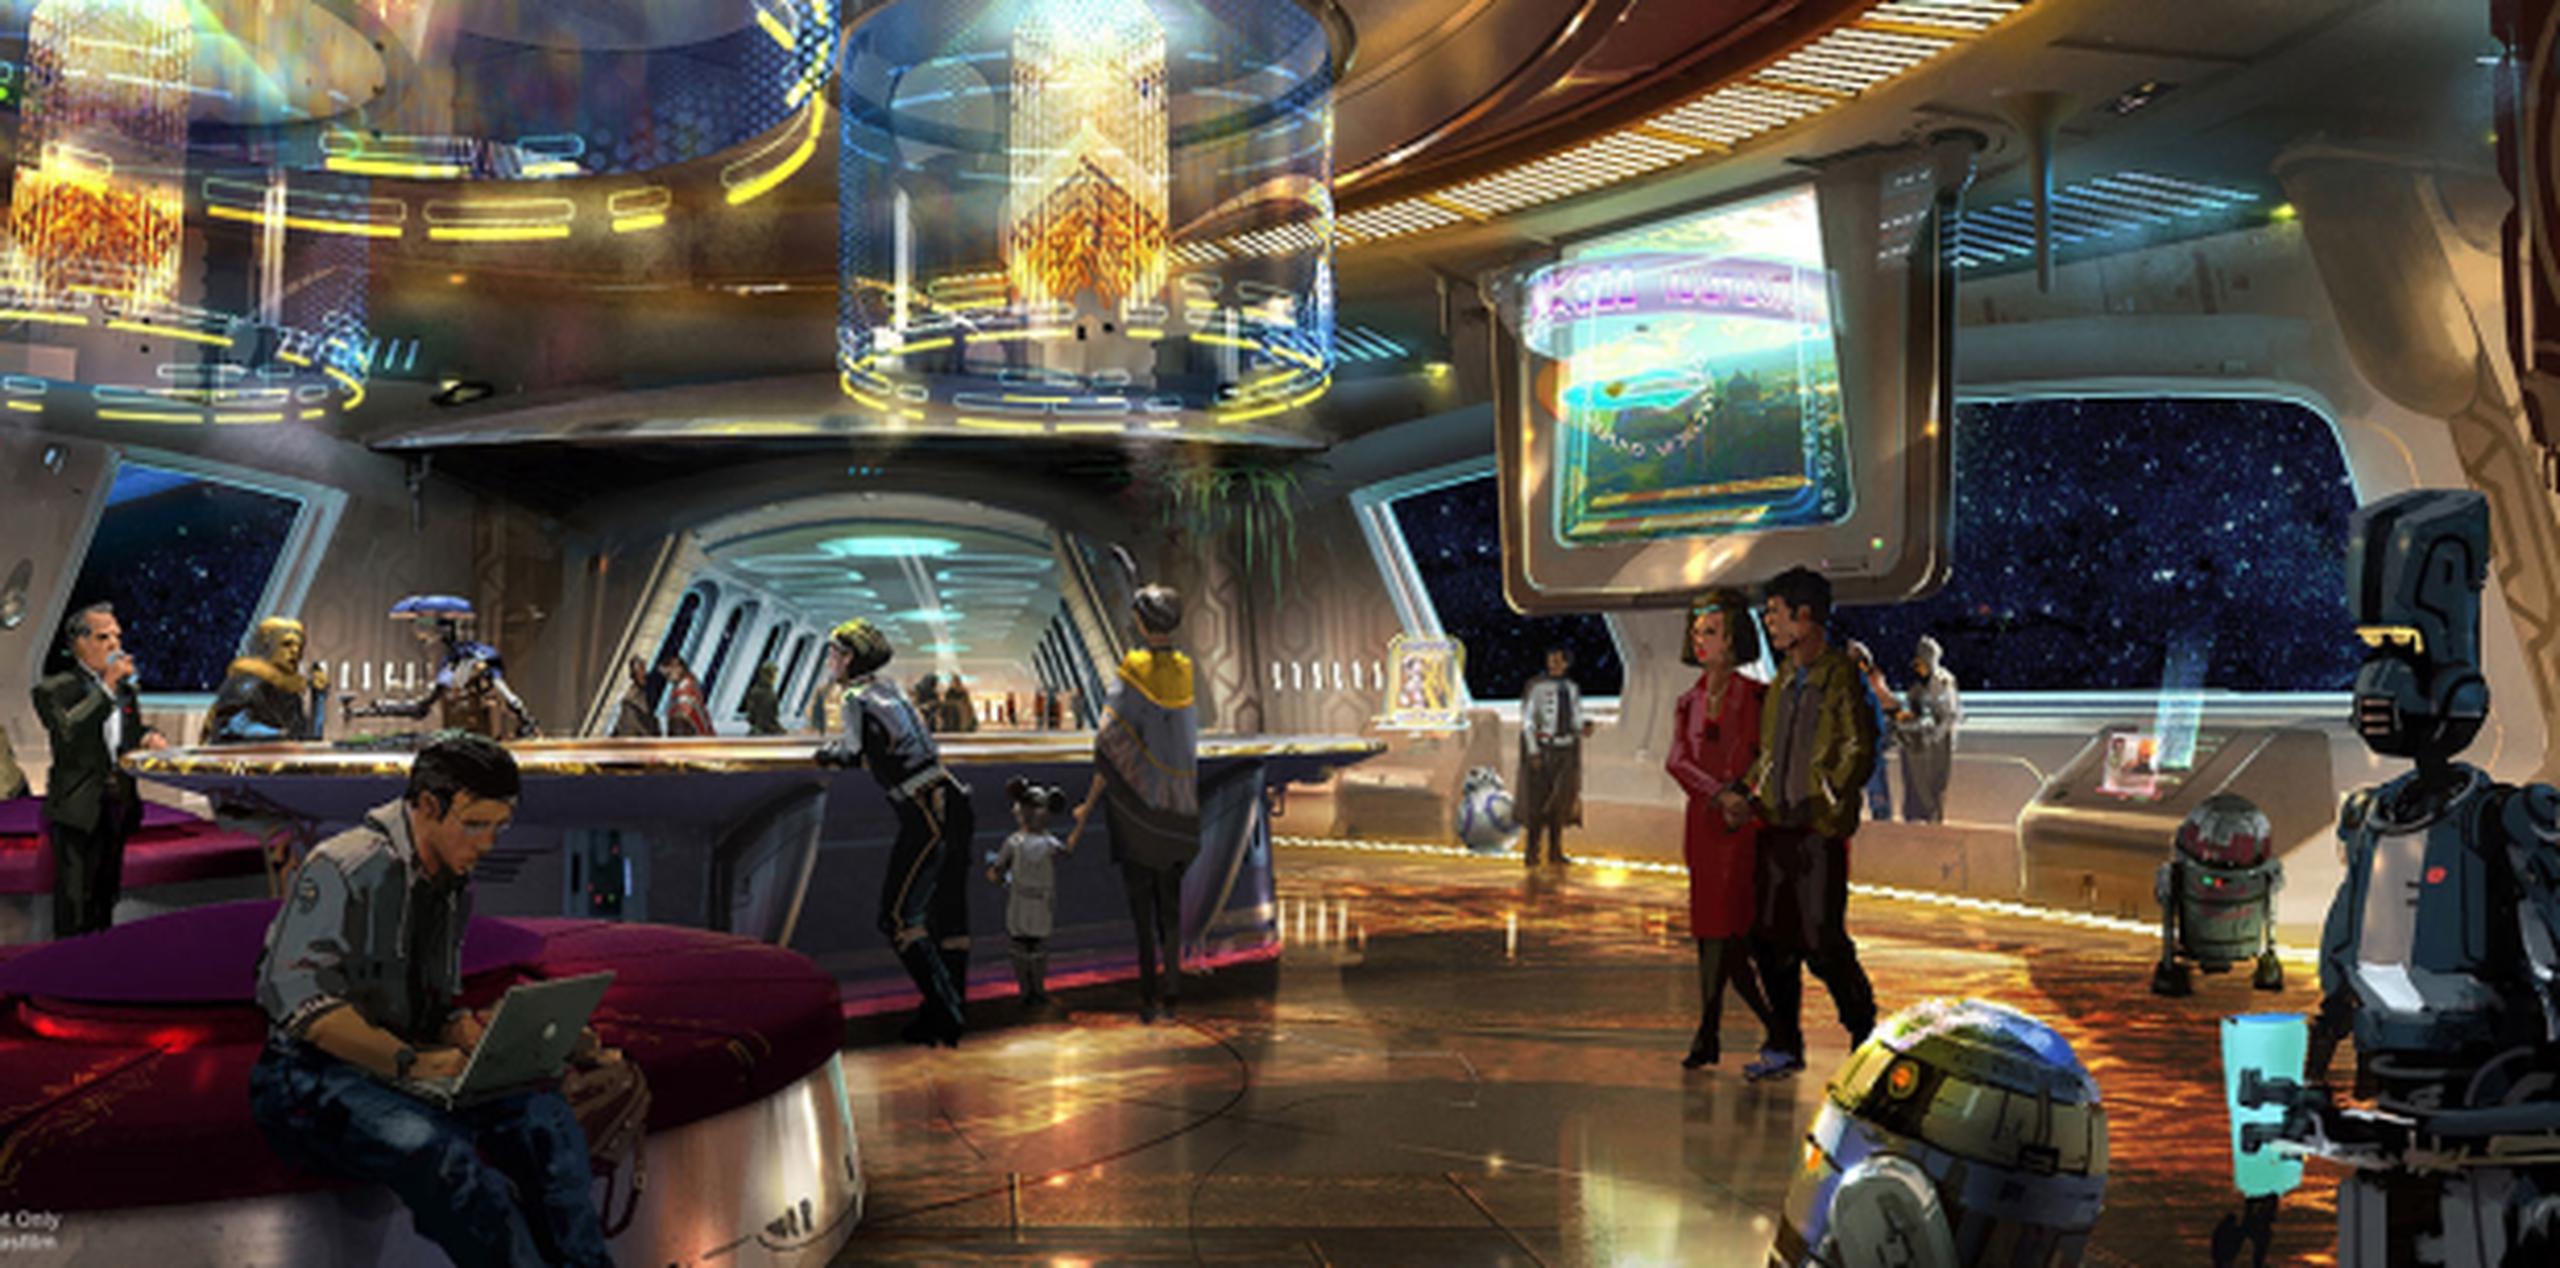 Concepto artístico del nuevo hotel Star Wars. (Disney.go.com)